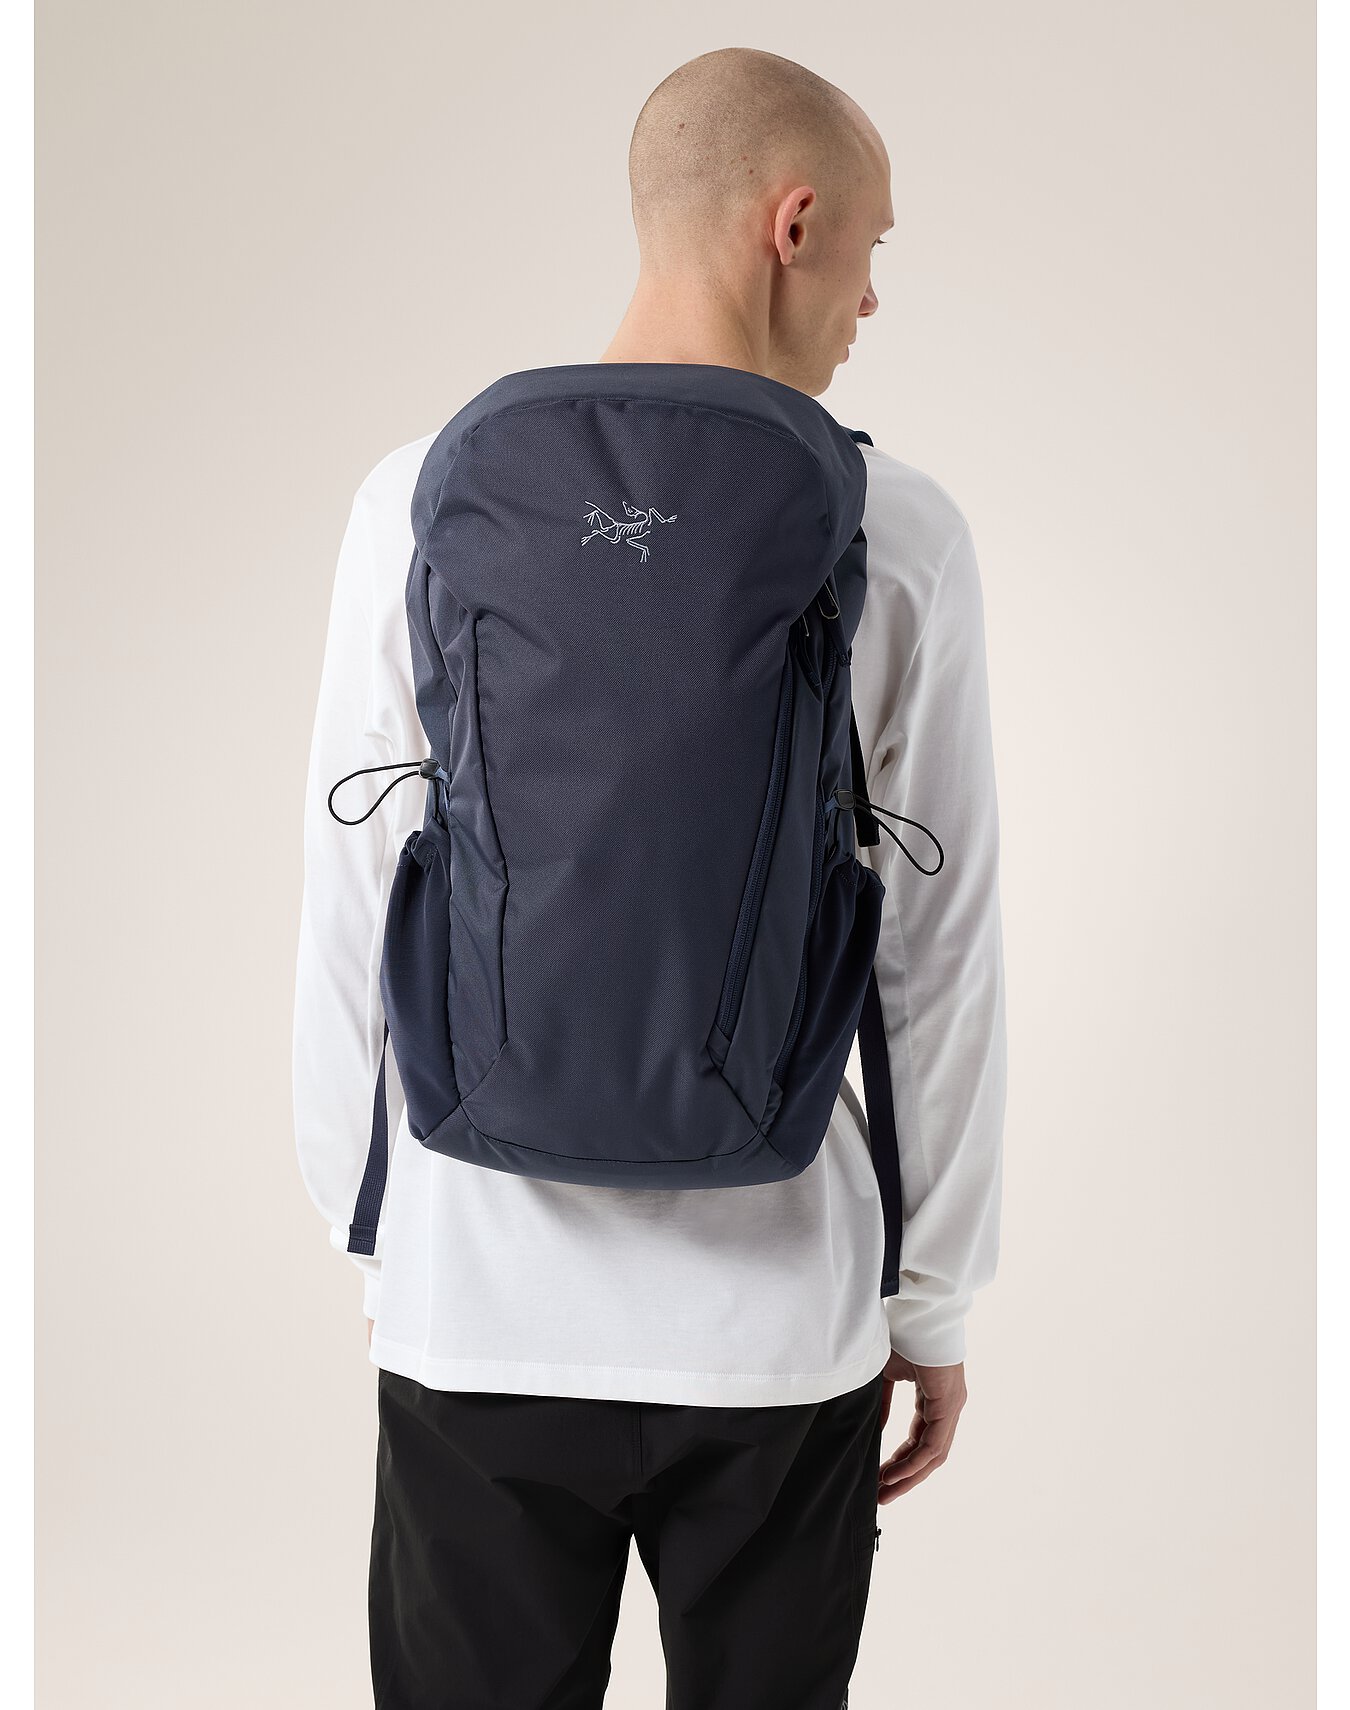 Mantis 30 Backpack | Arc'teryx Outlet